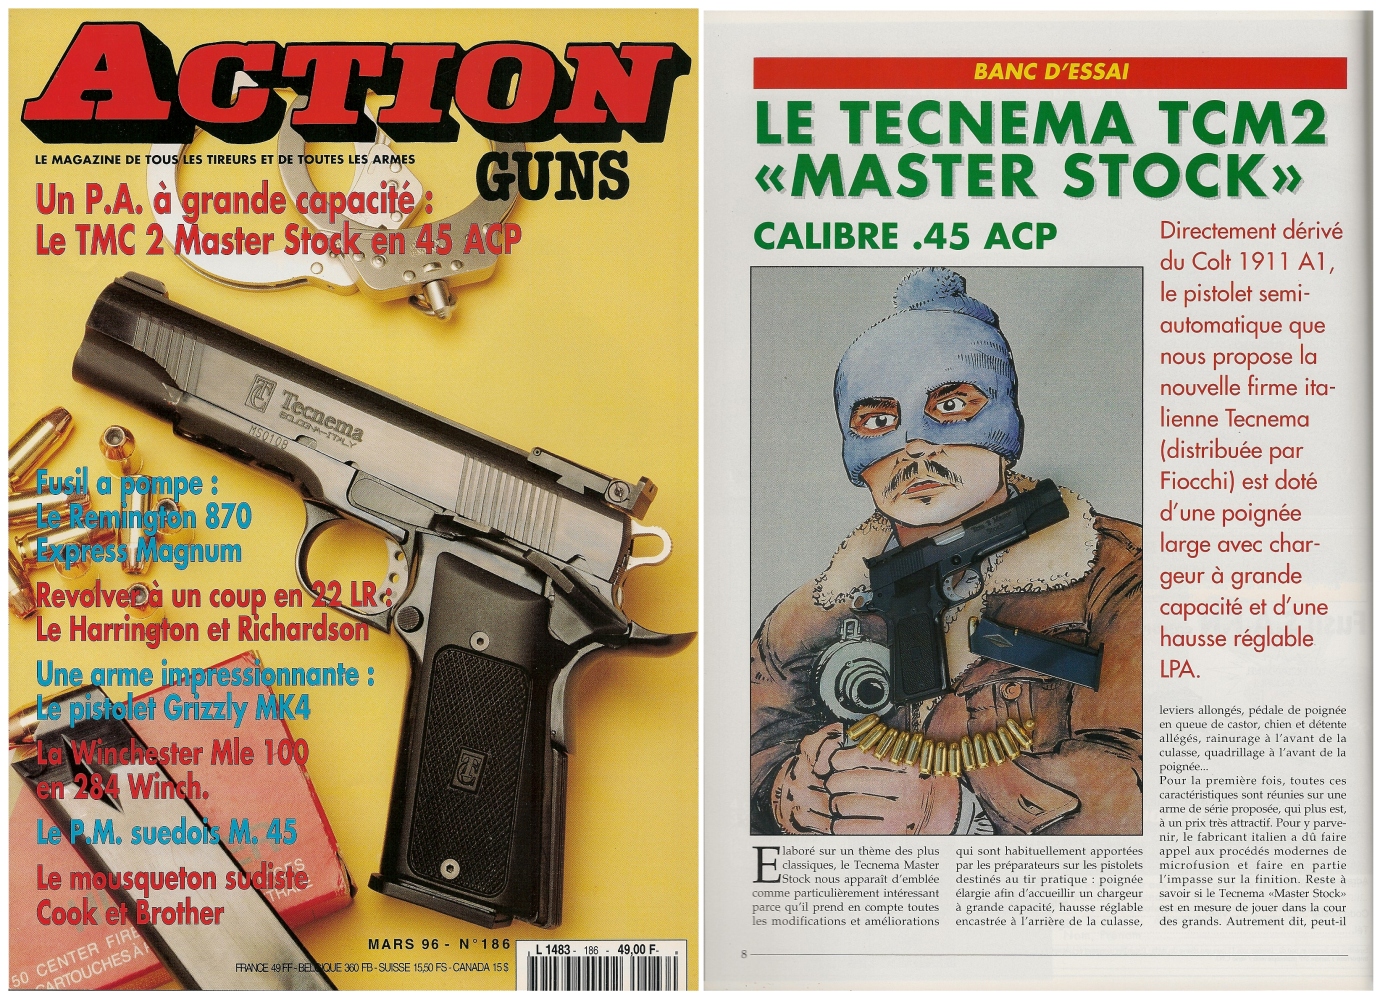 Le banc d’essai du pistolet Tecnema TCM2 Master Stock a été publié sur 6 pages dans le magazine Action Guns n° 186 (mars 1996).